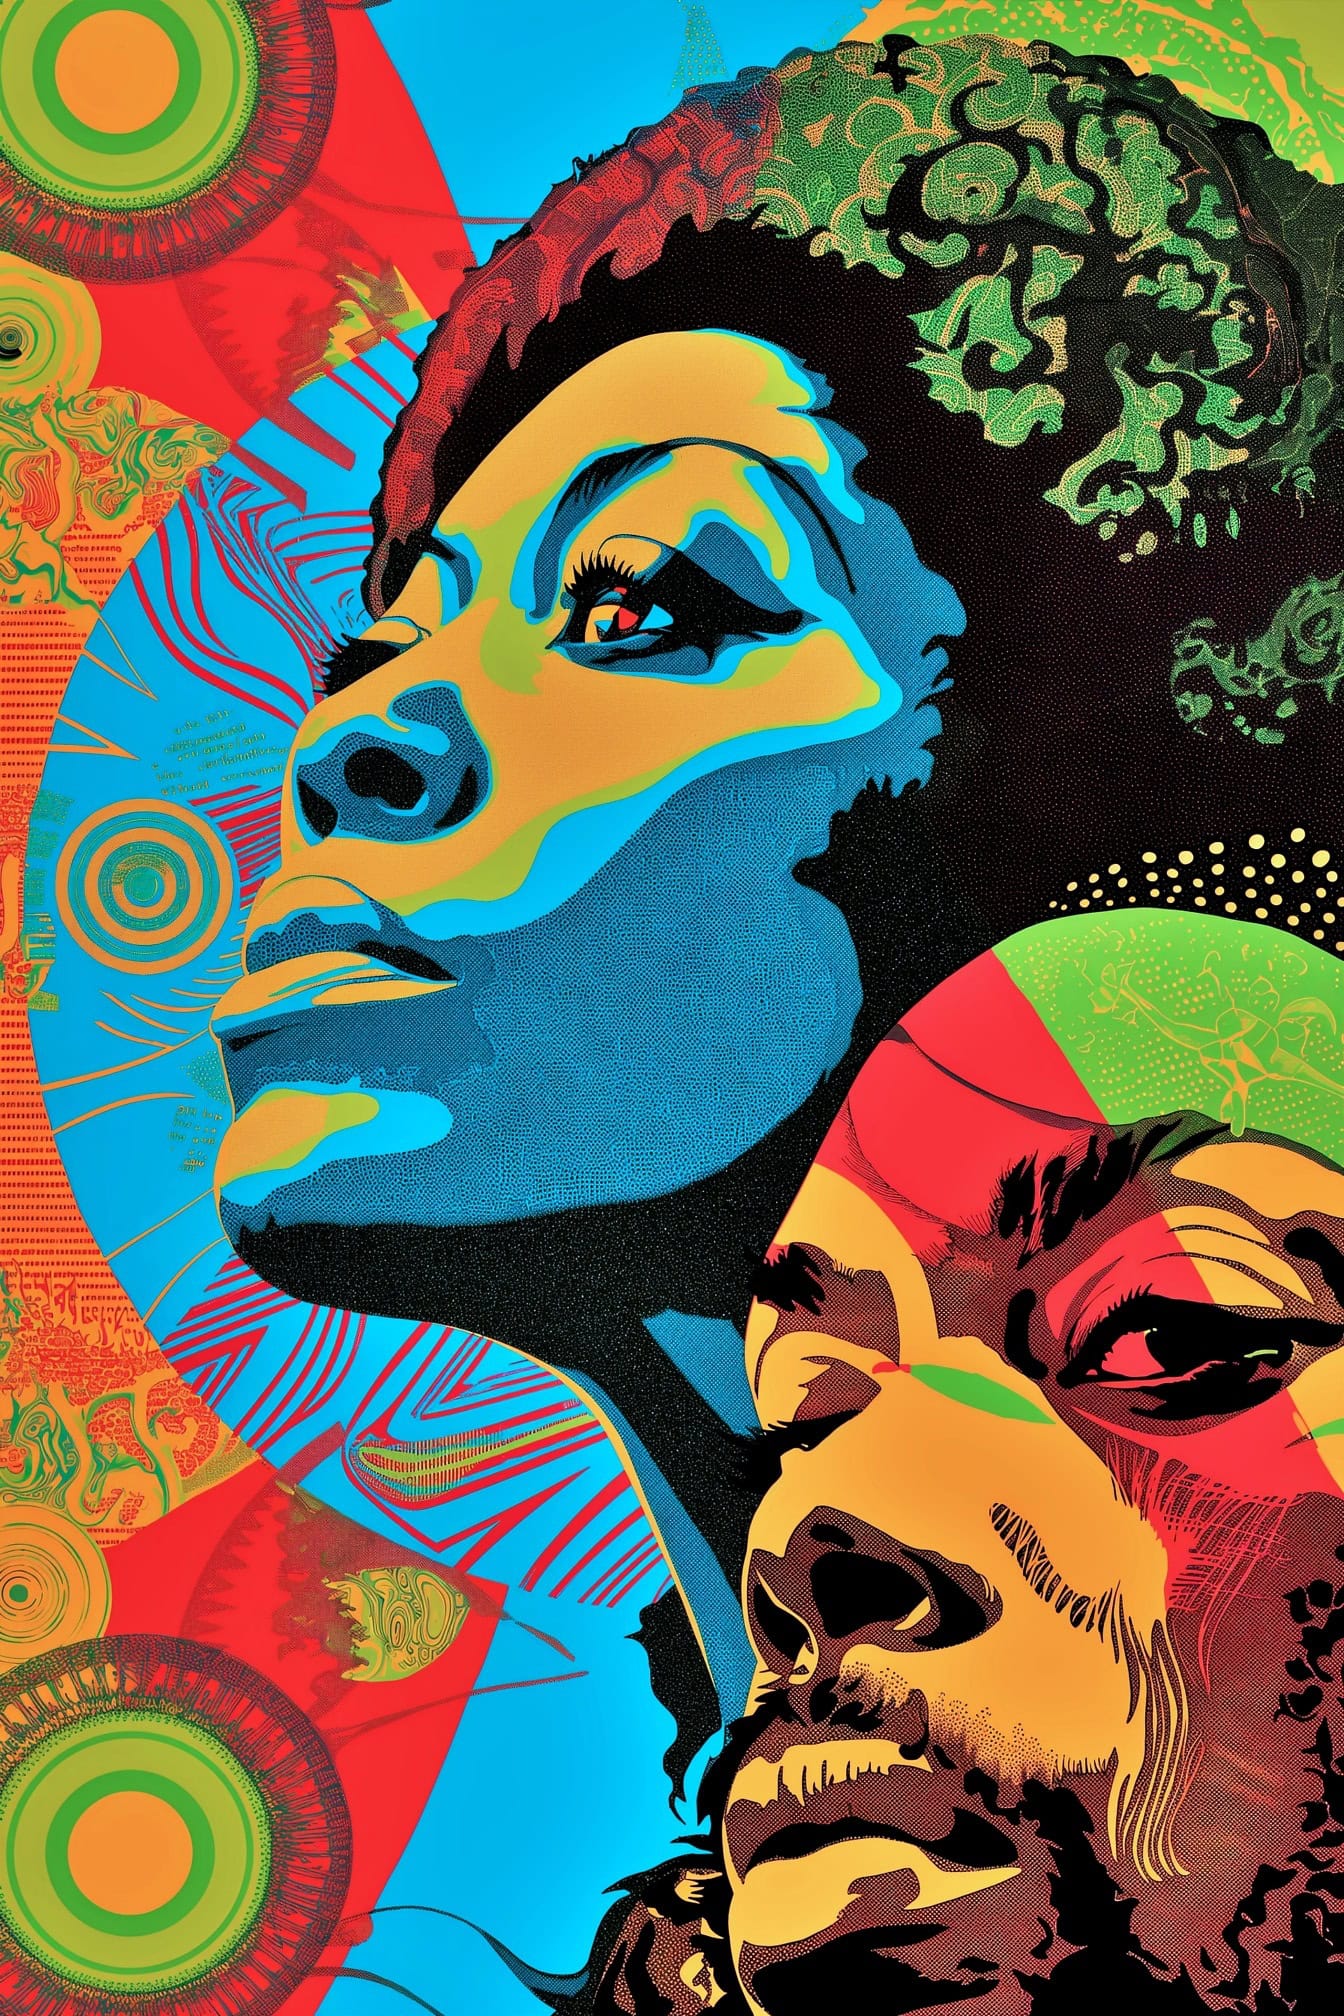 Abstrakt livlig affisch i popkonststilansikten av en afrikansk kvinna och en man med en färgrik bakgrund